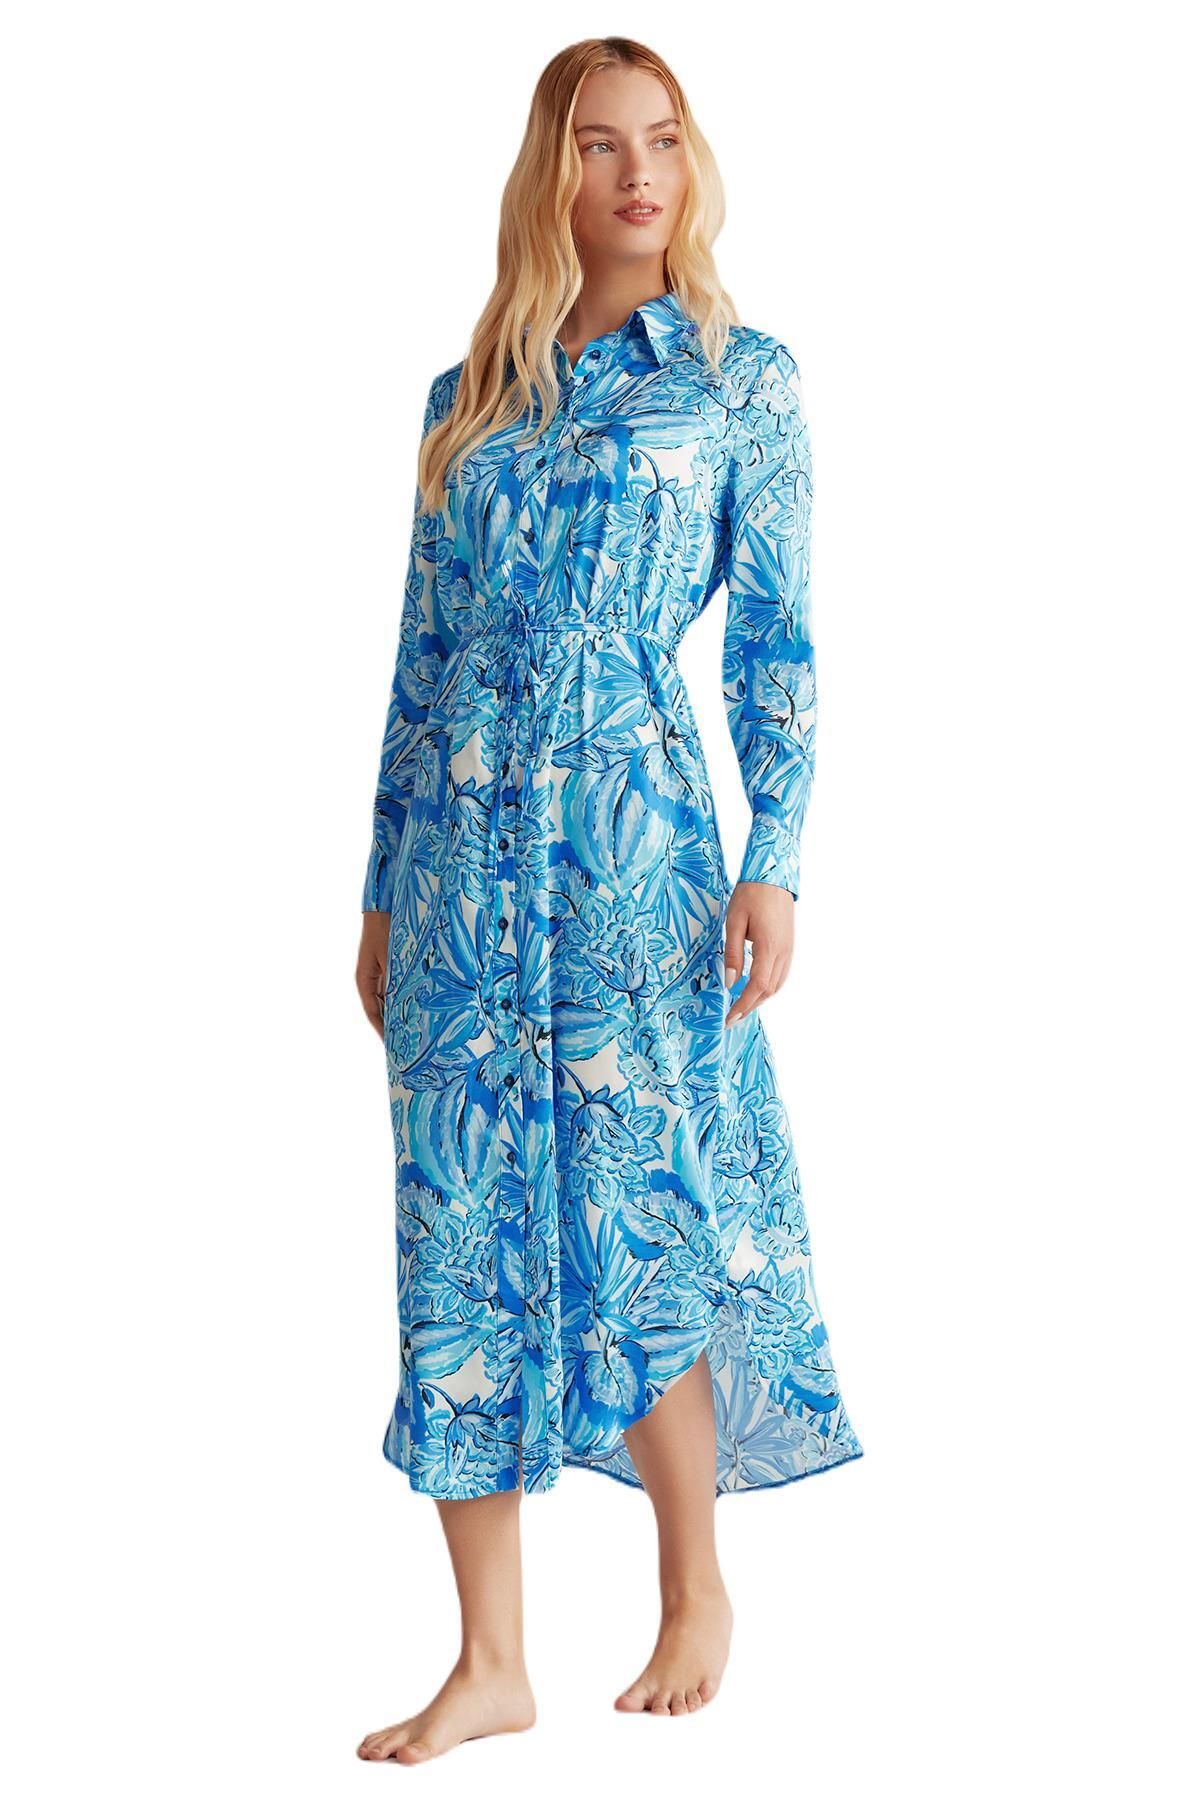 Catherines Kadın Mavi Çiçek Desenli Elbise